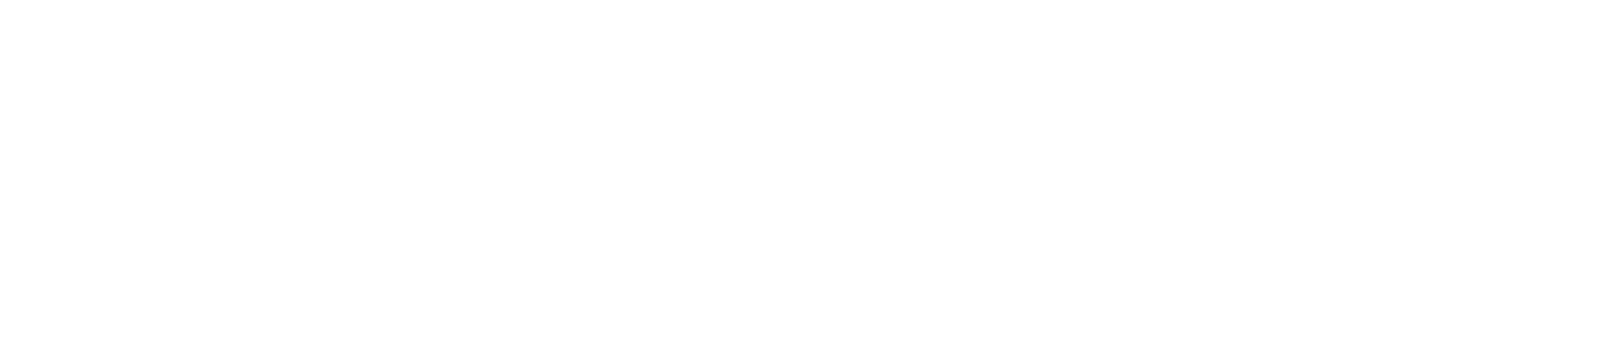 Global Institute of Advisors